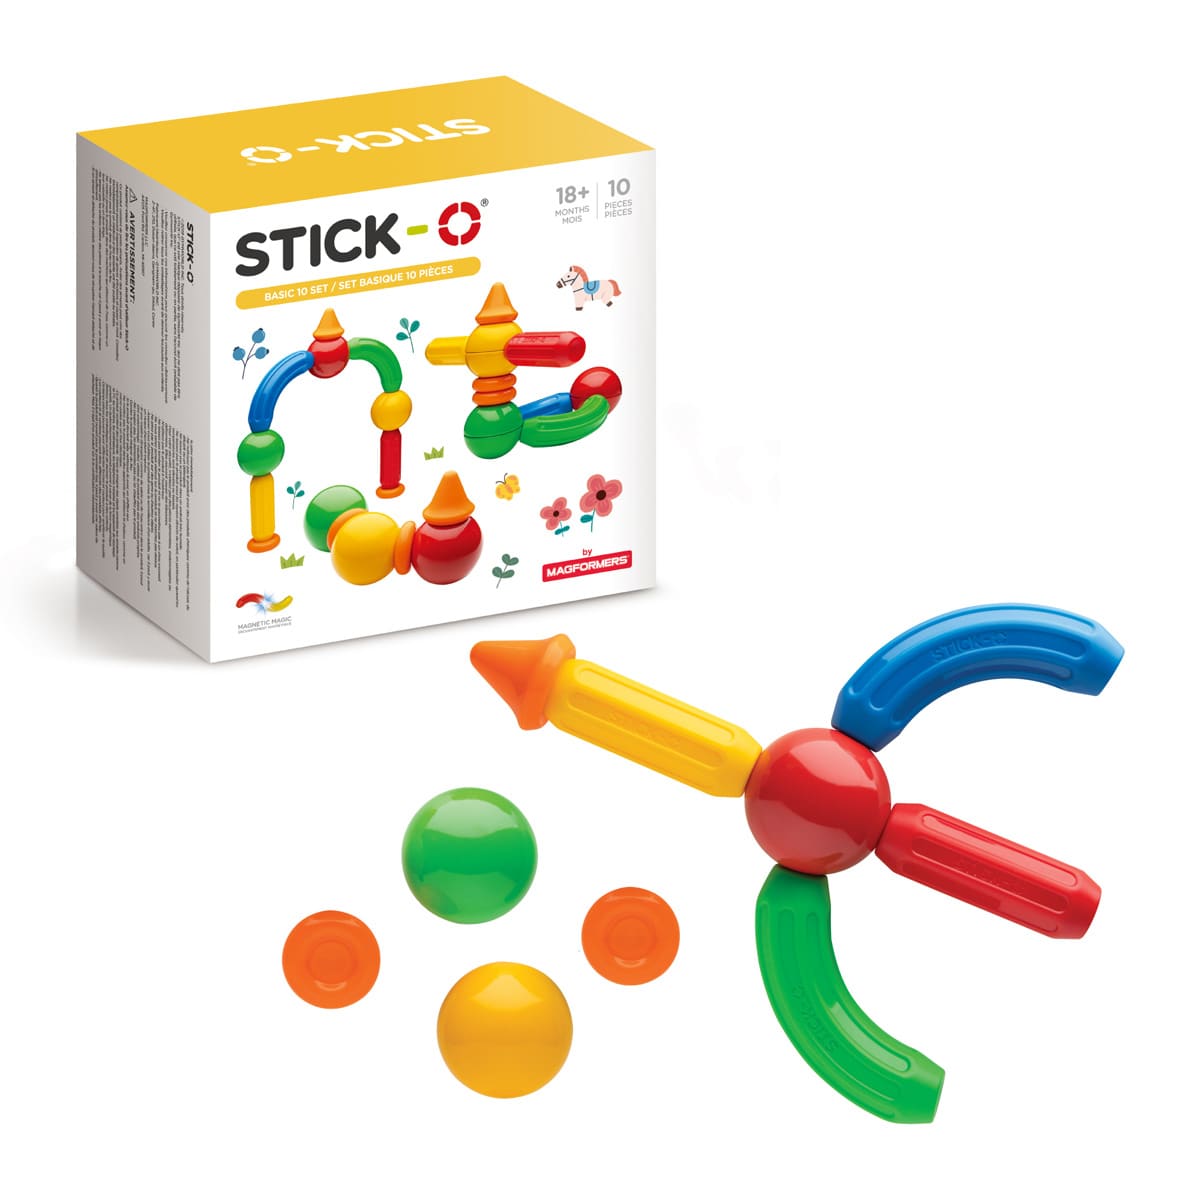 スティック・オー ベーシック 10ピース: ボーネルンド オンラインショップ。世界中の知育玩具など、あそび道具がたくさん。0歳 からのお子様へのプレゼントにも。